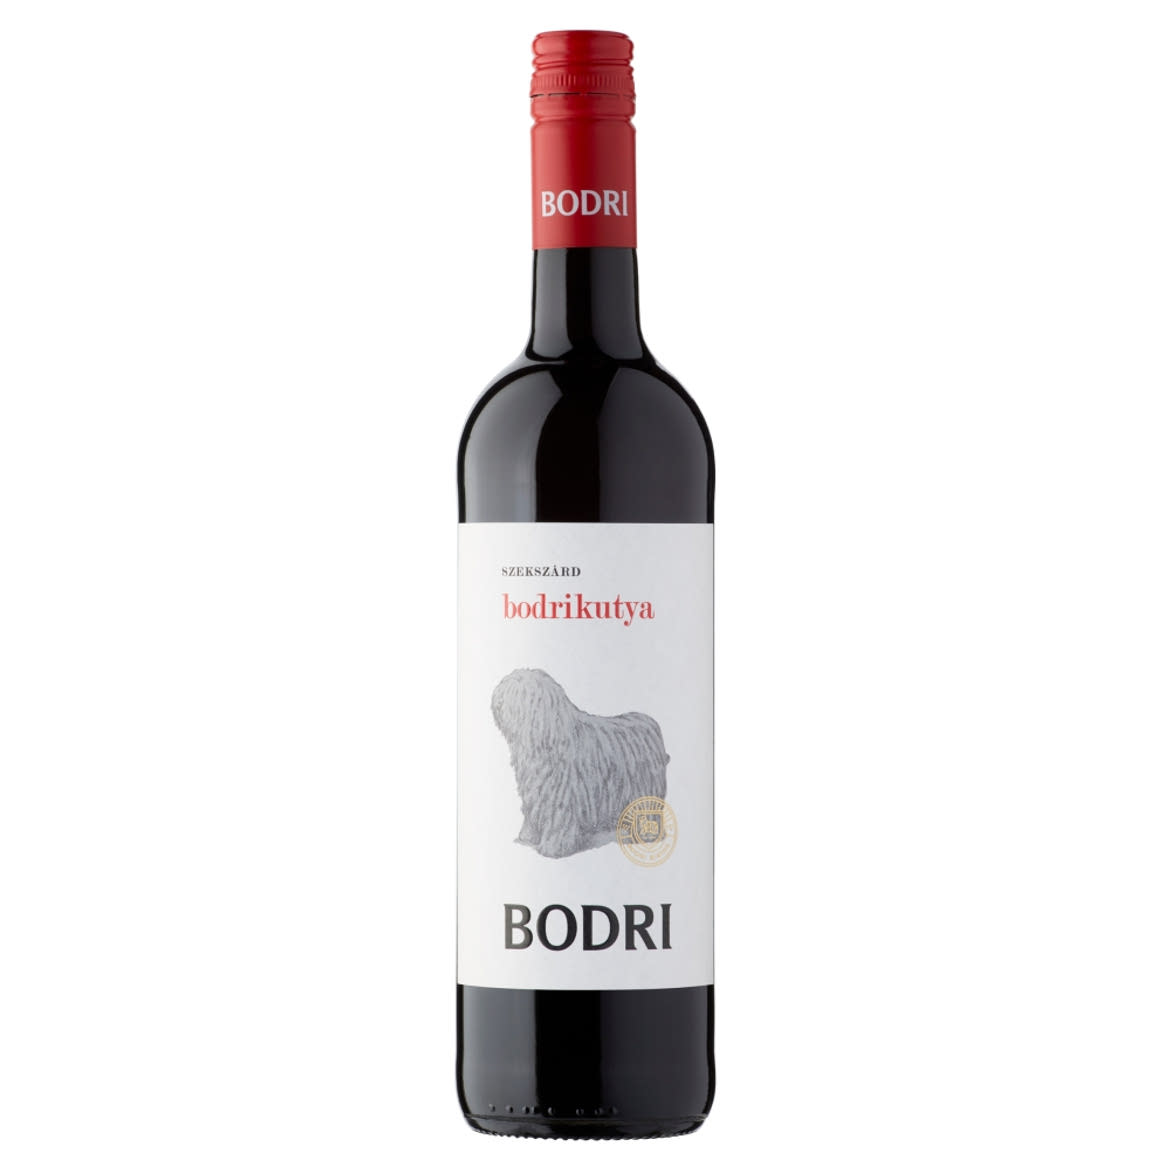 Bodri Bodrikutya Szekszárdi Cuvée száraz vörösbor 13%